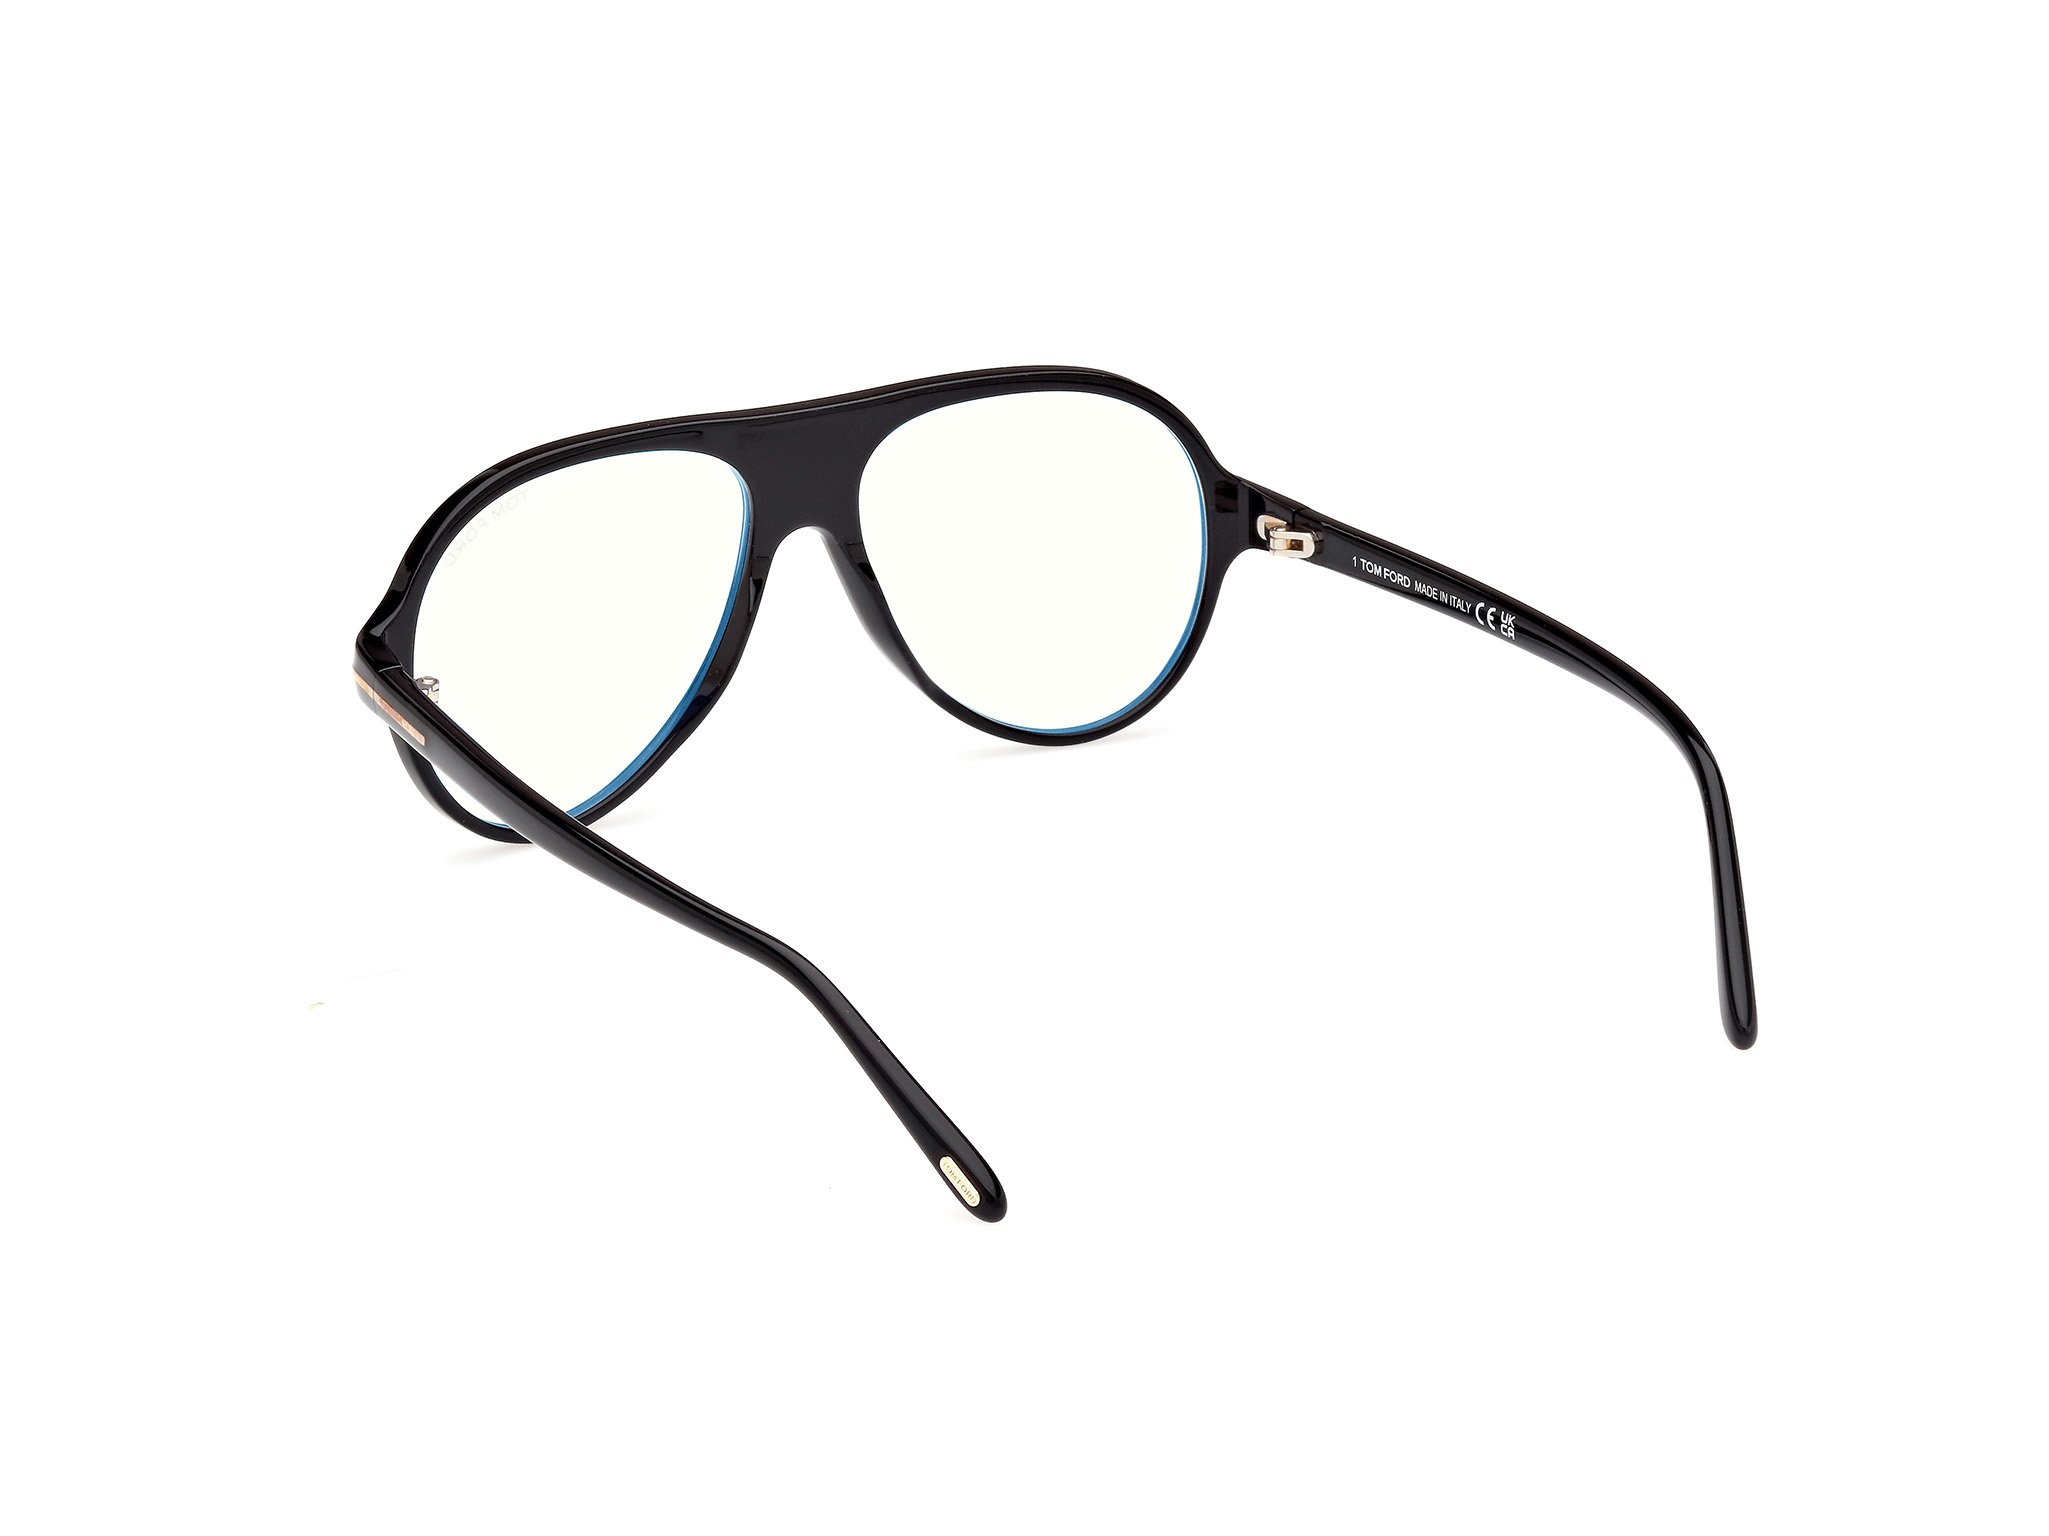 Das Bild zeigt die Korrektionsbrille FT5012-001 von der Marke Tom Ford in schwarz.